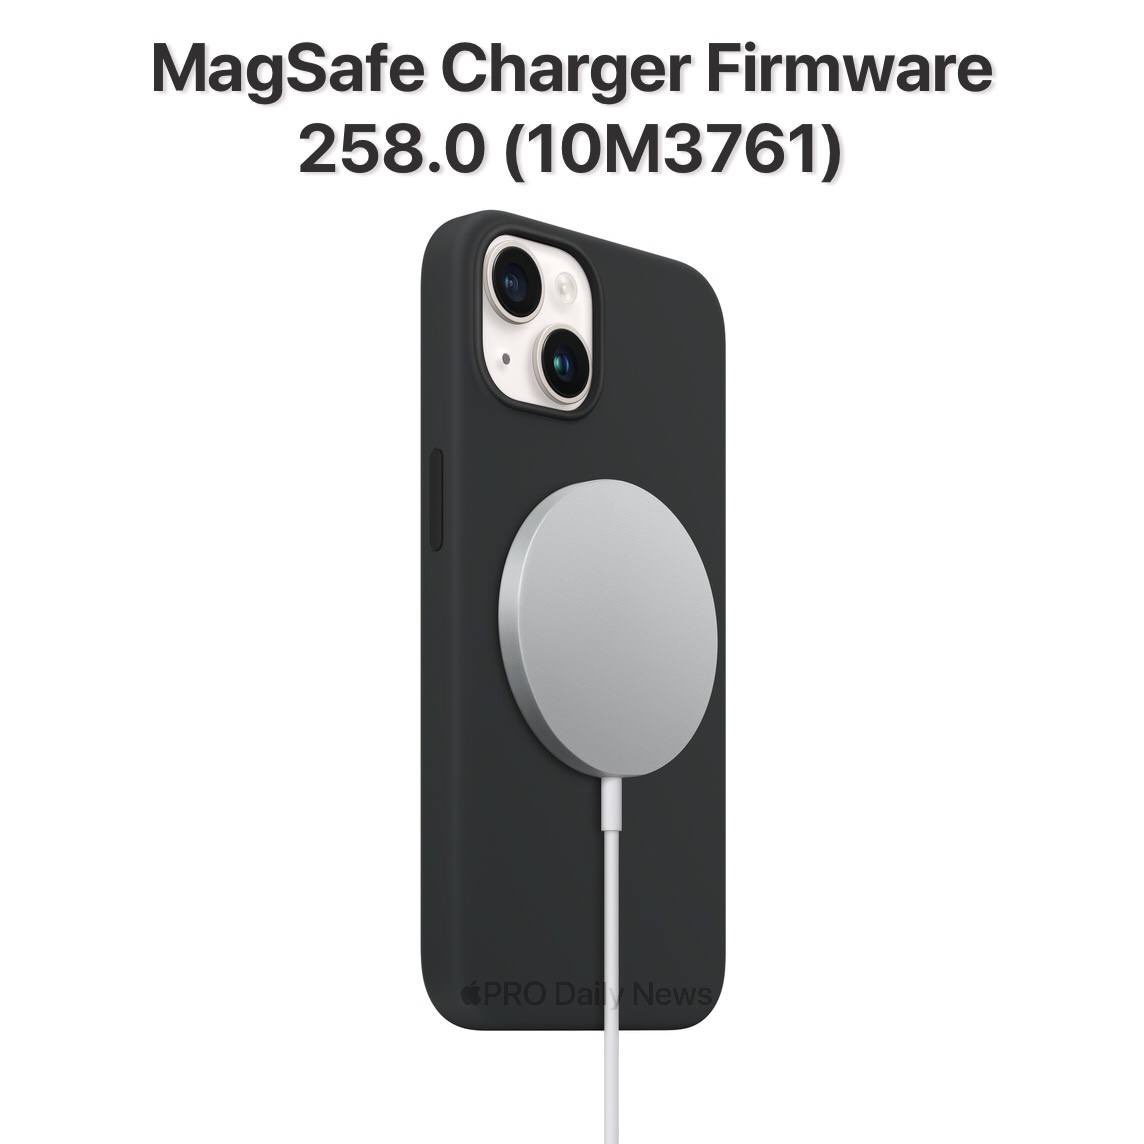 苹果为 MagSafe 充电器发布 10M3761 固件更新，版本号258.0.0.0